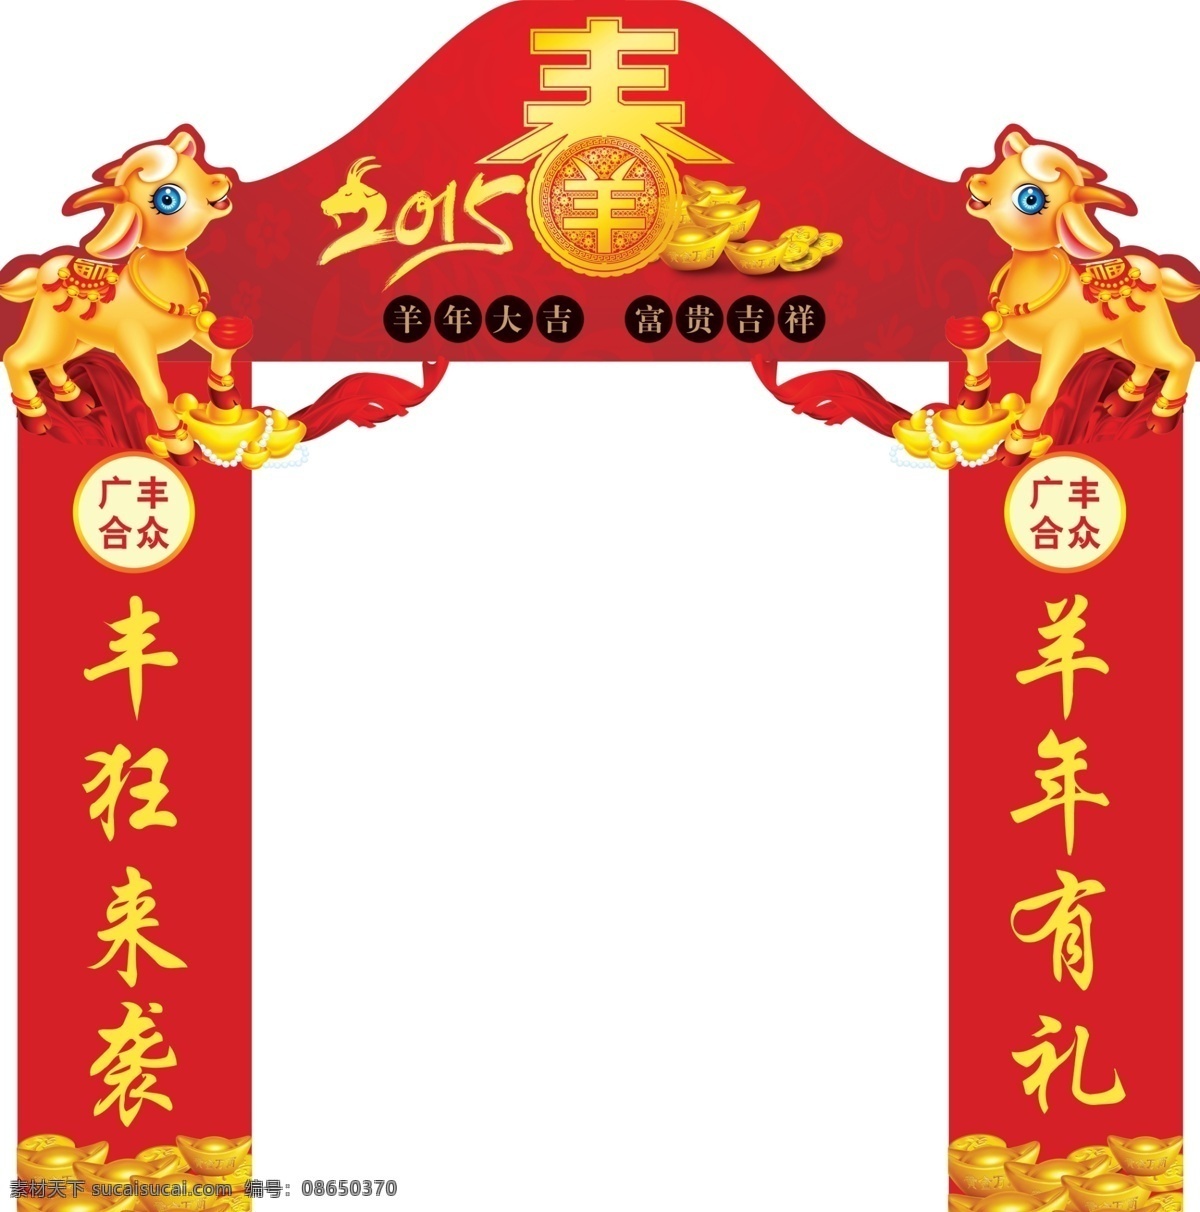 2015 年 广丰 合众 新春 拱门 型 羊年 广丰合众 拱门型 原创设计 原创节日素材